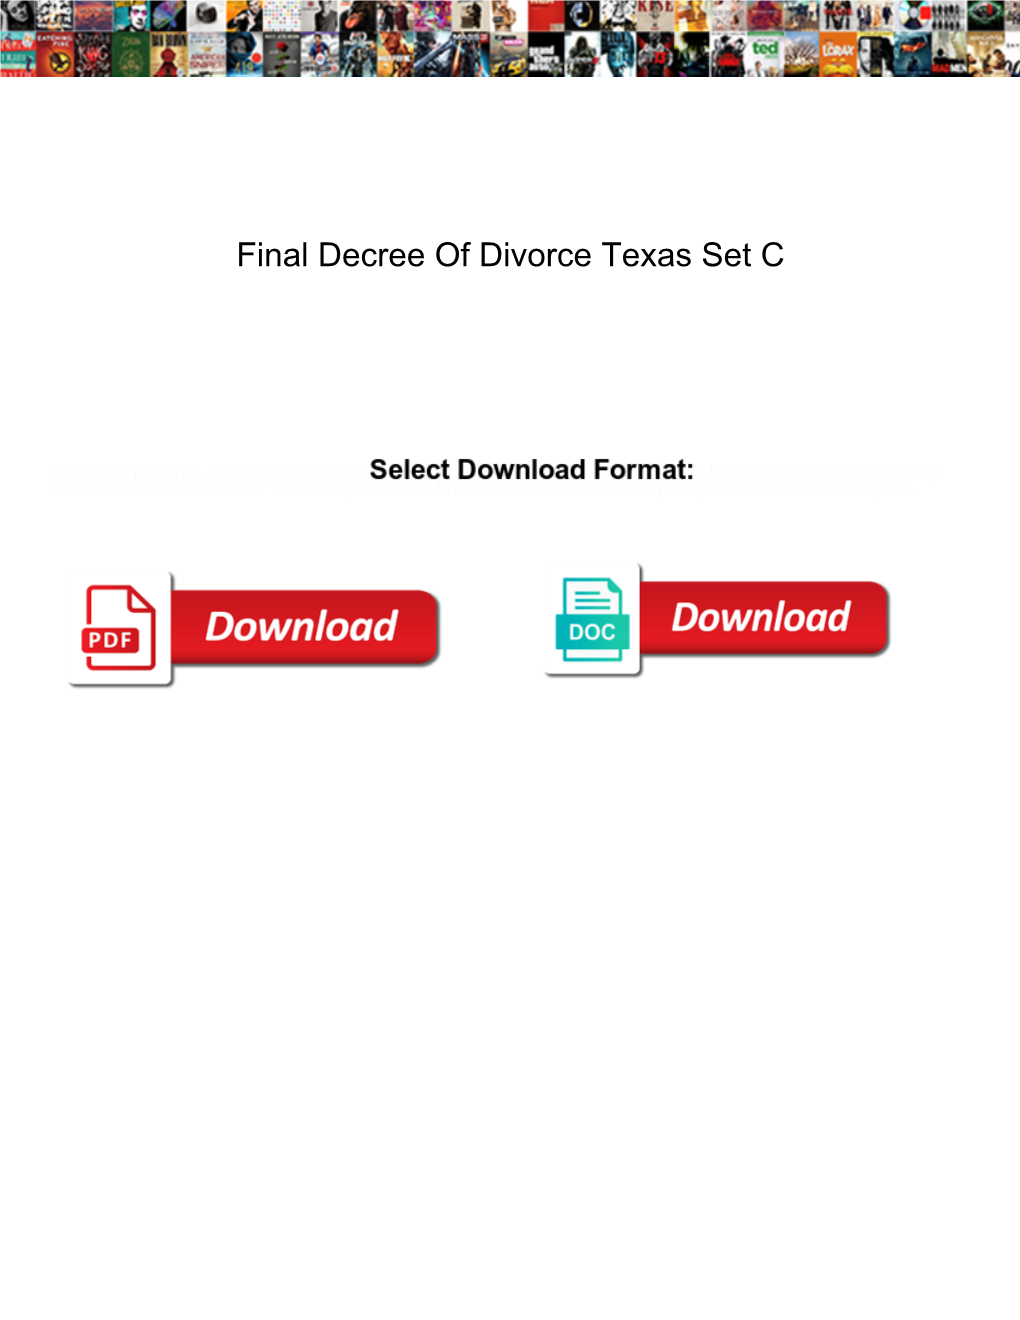 Final Decree of Divorce Texas Set C